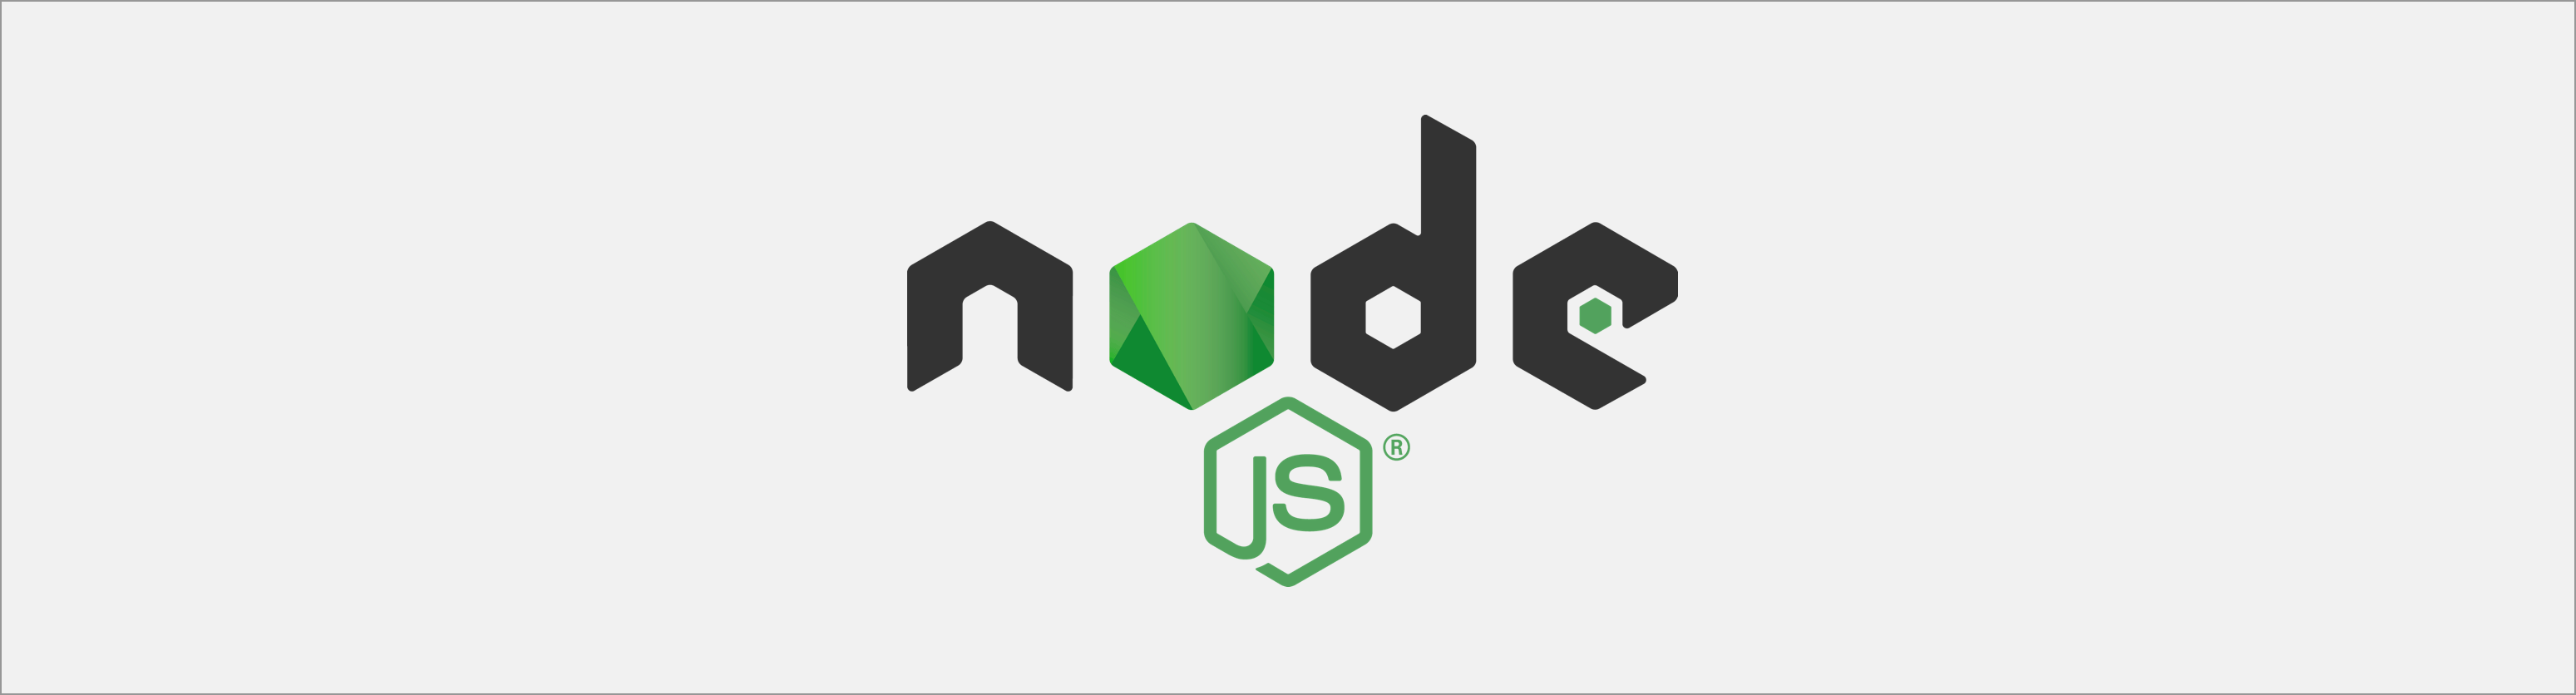 Electron.js Logo - Node.js Debugging Recipes for Visual Studio Code